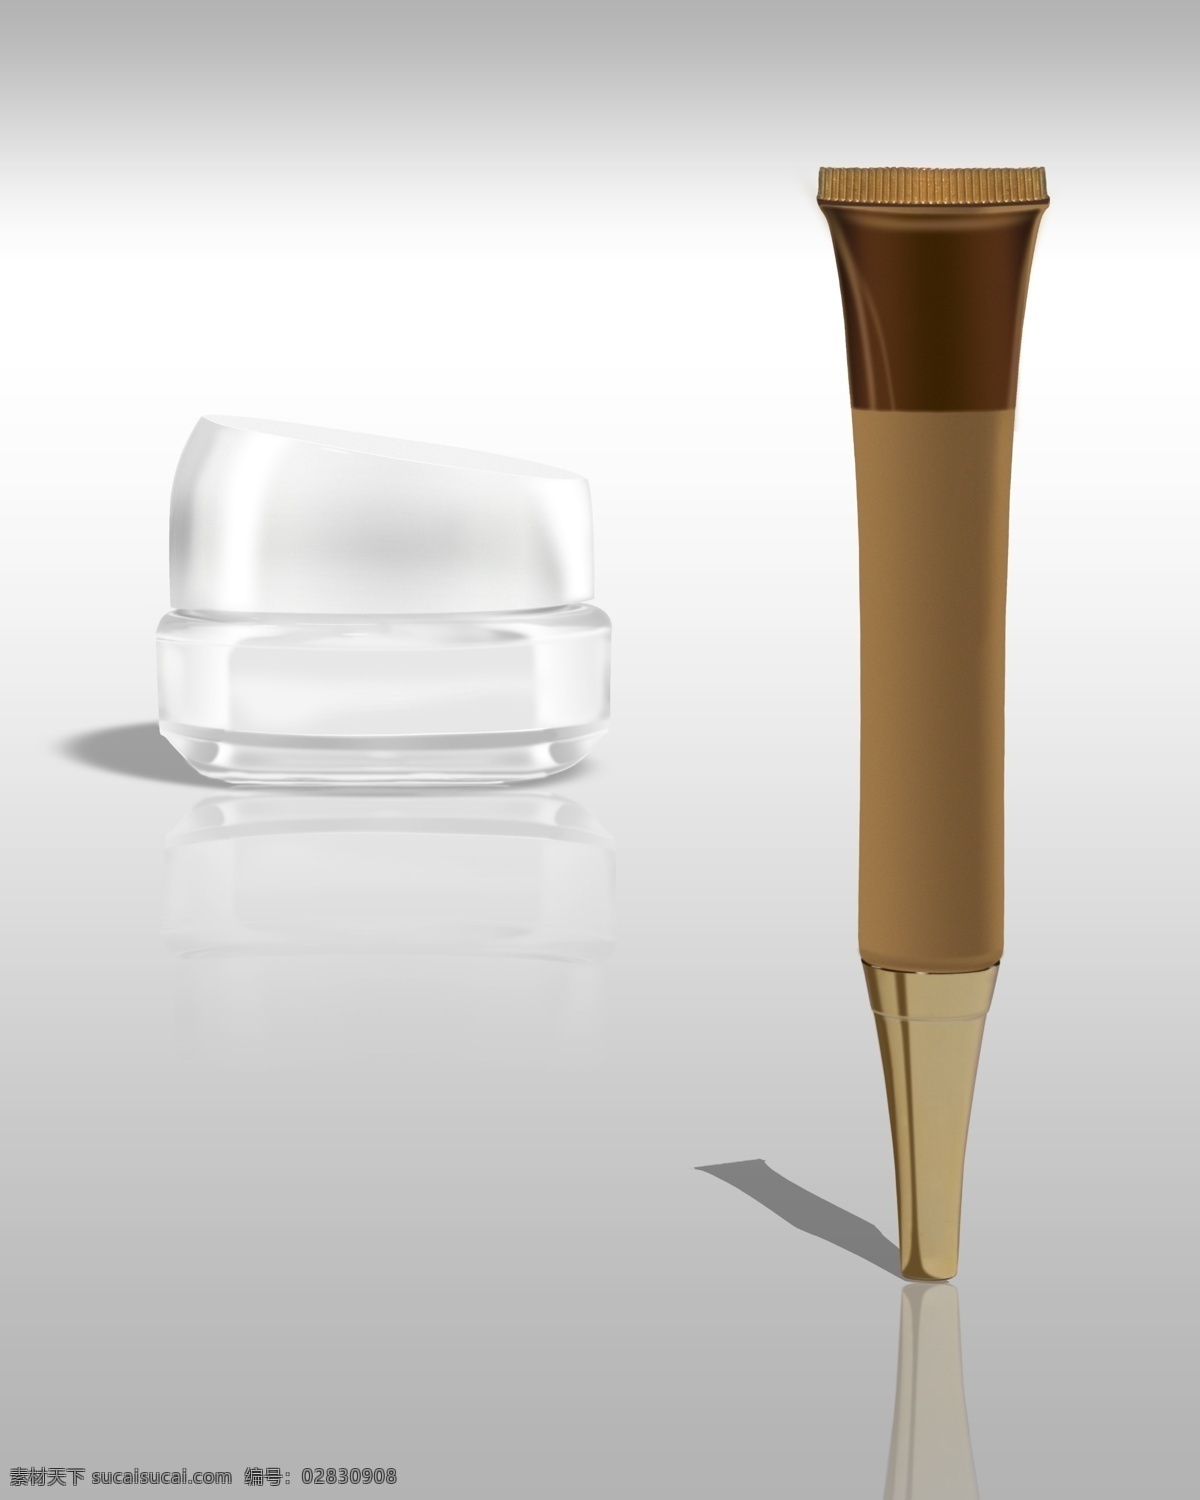 化妆品 玻璃 瓶子 软管 化妆品瓶子 玻璃瓶子 包装设计 广告设计模板 源文件